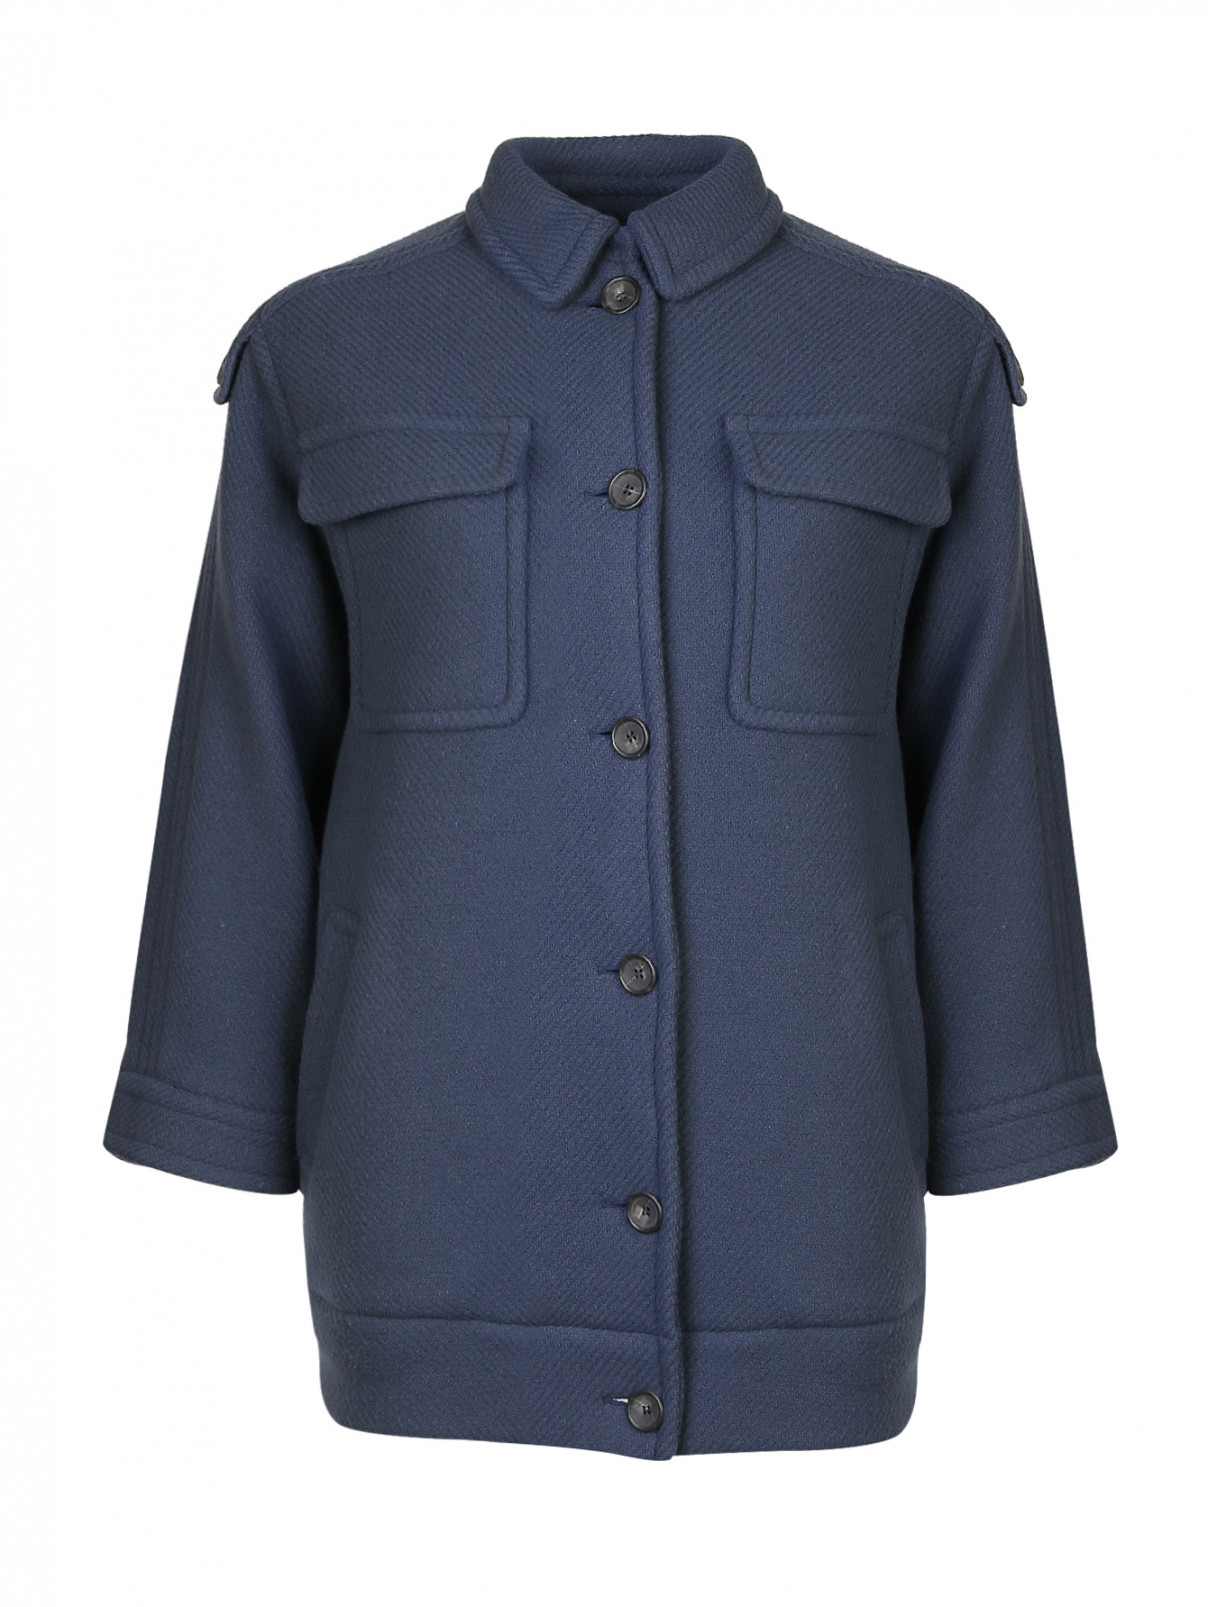 Пальто из смешанной шерсти с накладными карманами на груди Paul&Joe  –  Общий вид  – Цвет:  Синий